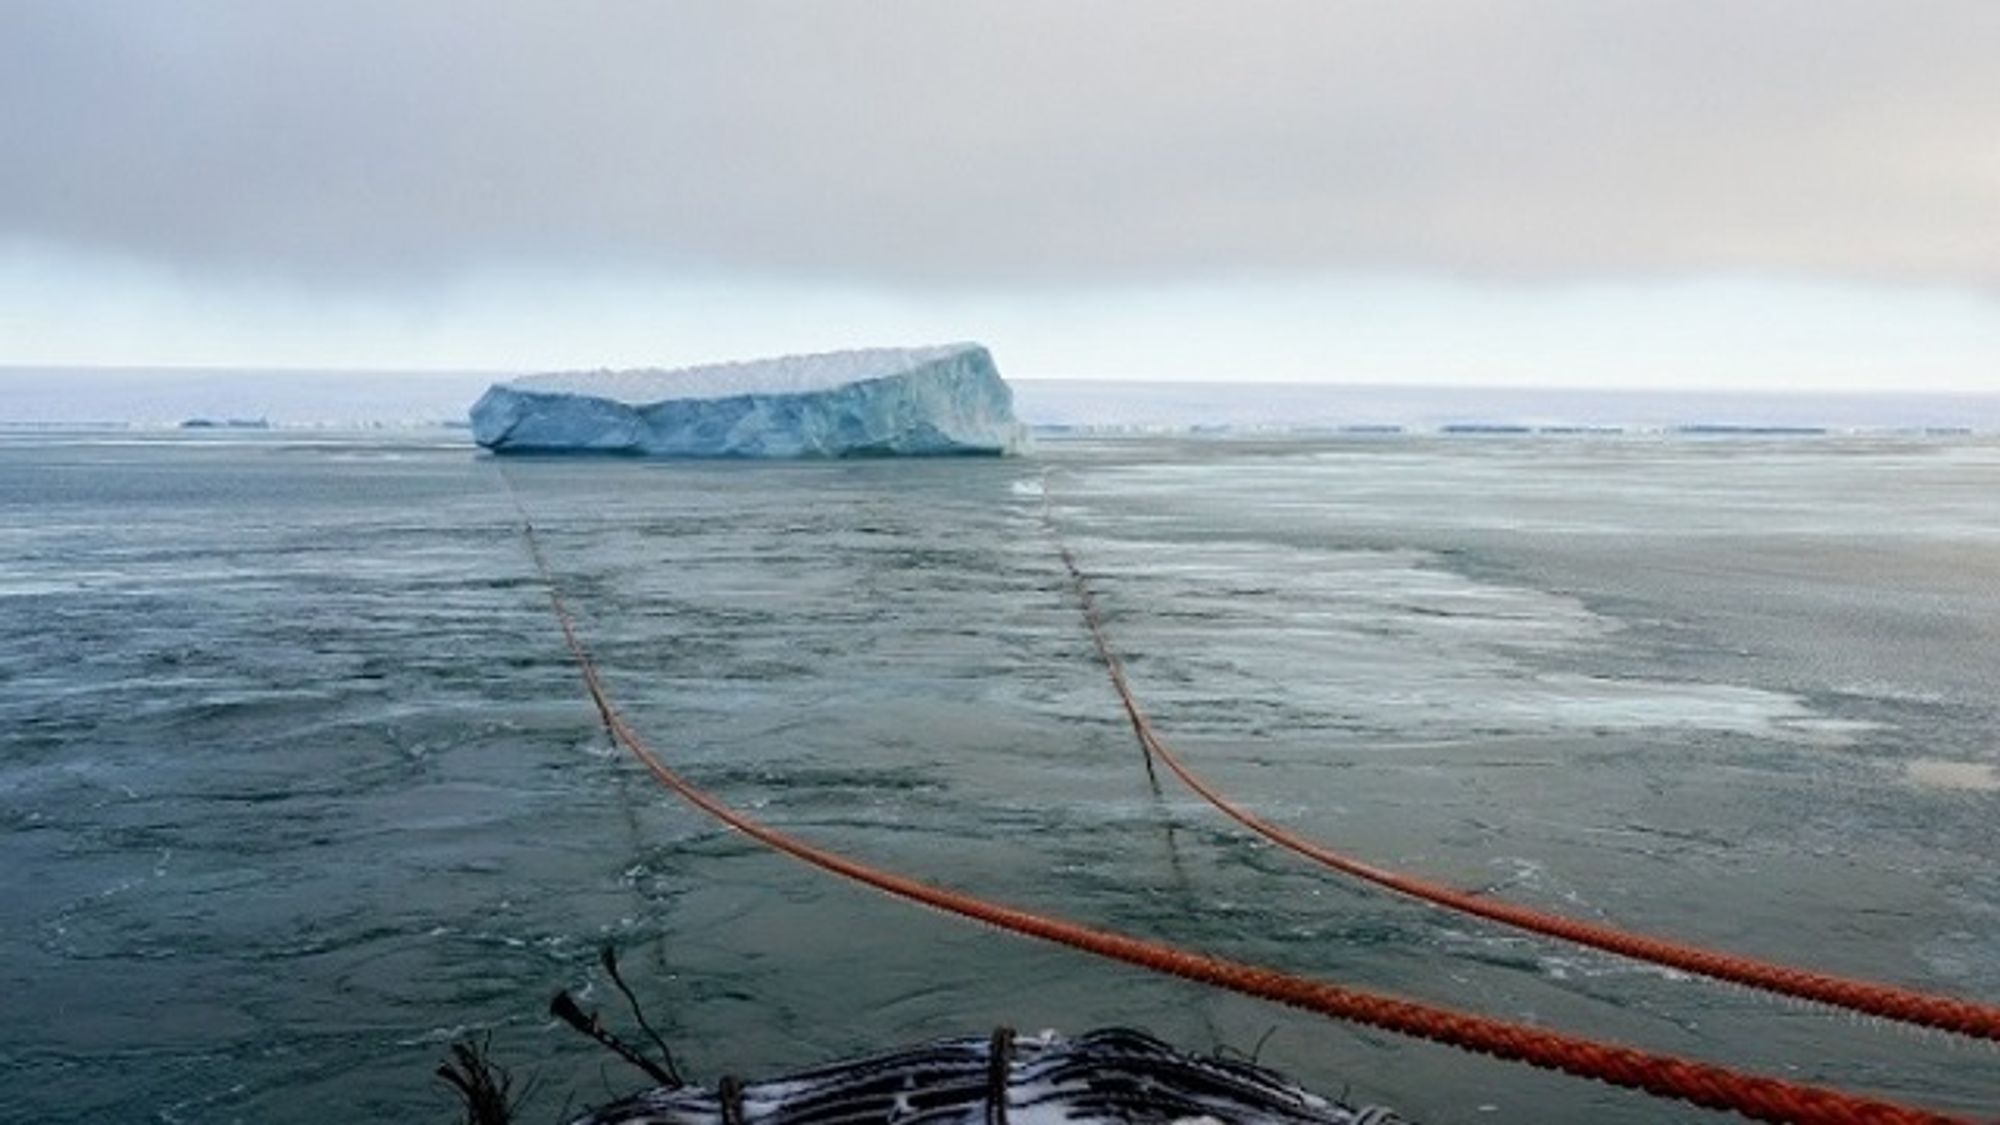 Isbryteren Kapitan Dranitsyn og forskningsskipet Akademik Treshnikov klarte å endre kurs og taue et isfjell på rundt 1 million tonn i Karahavet.